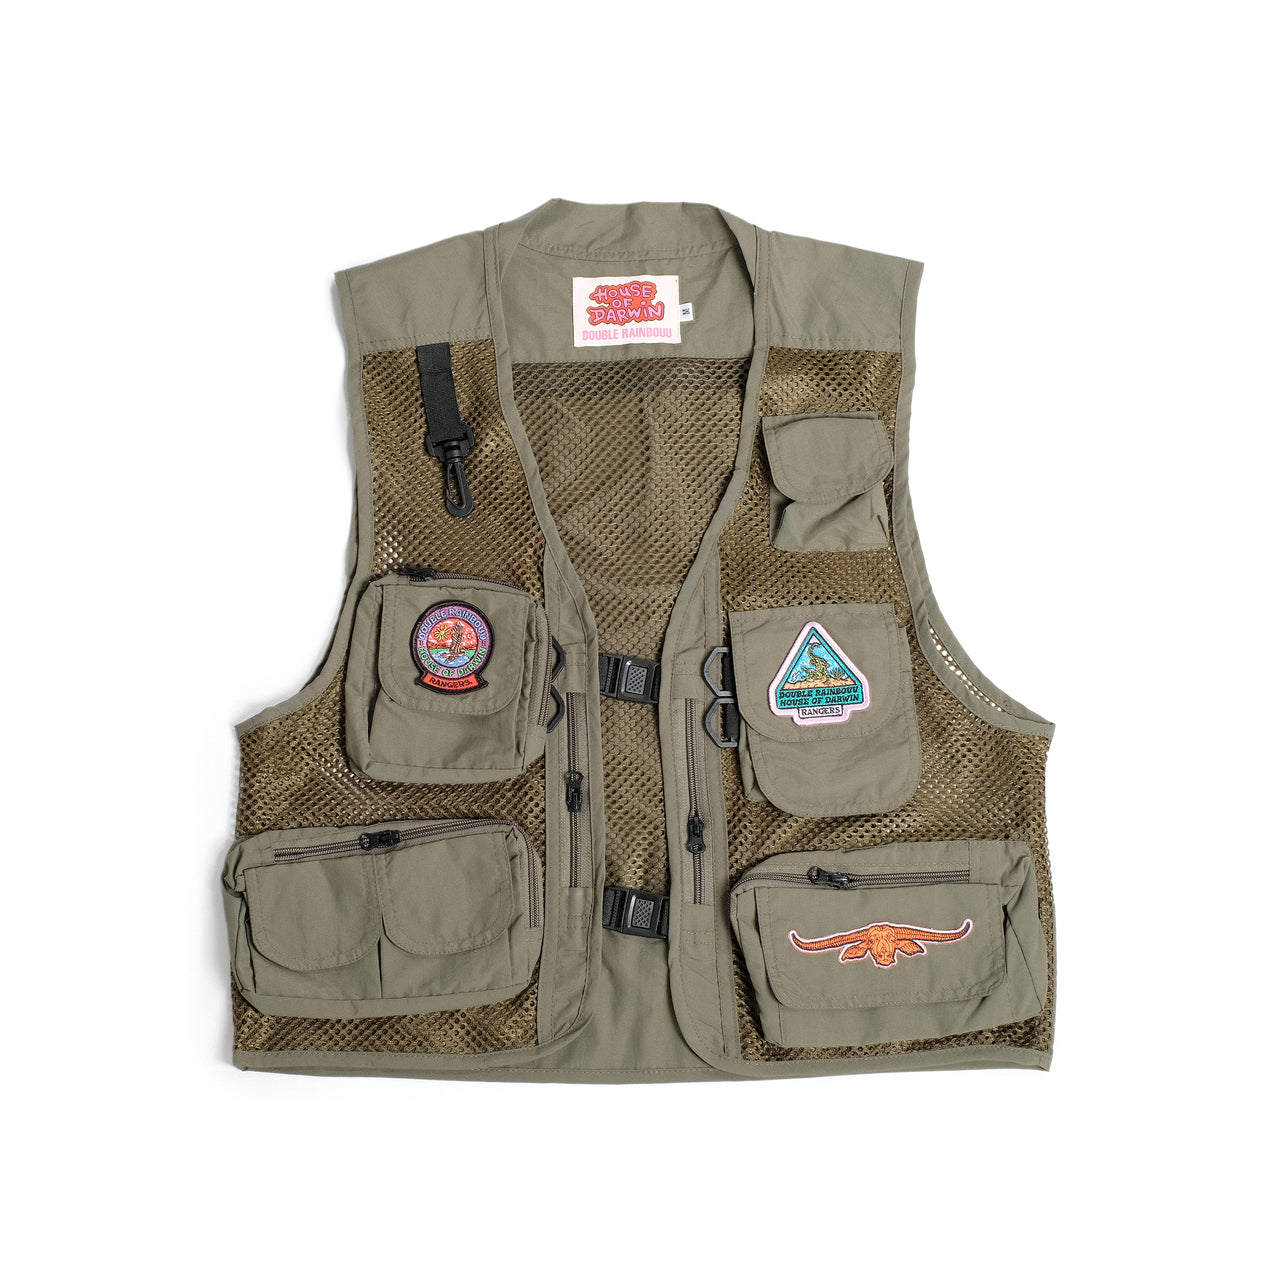 Double Rainbouu x HOD - Rangers Fishing Vest